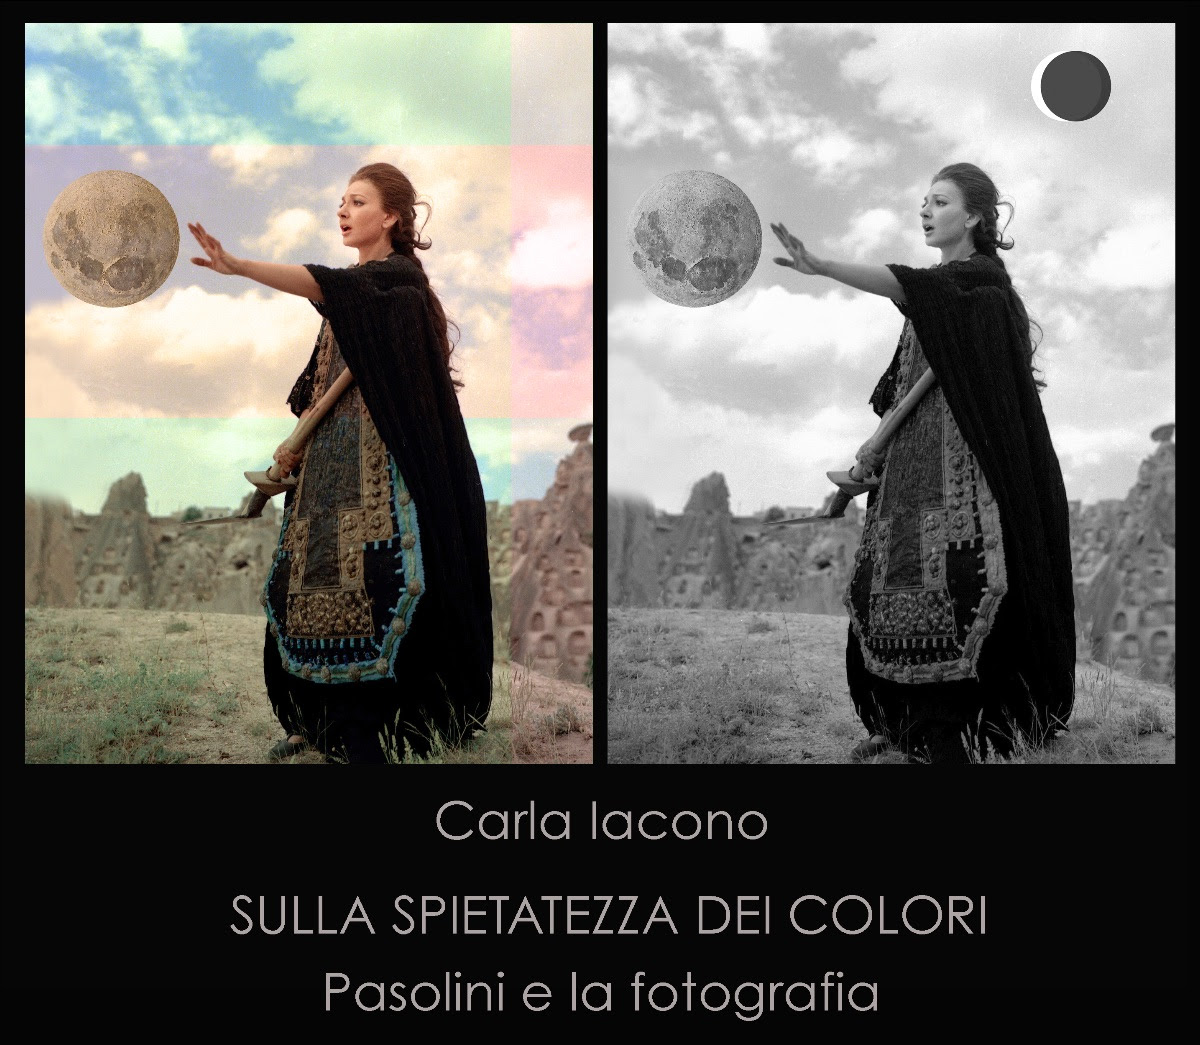 Carla Iacono – Sulla spietatezza dei colori